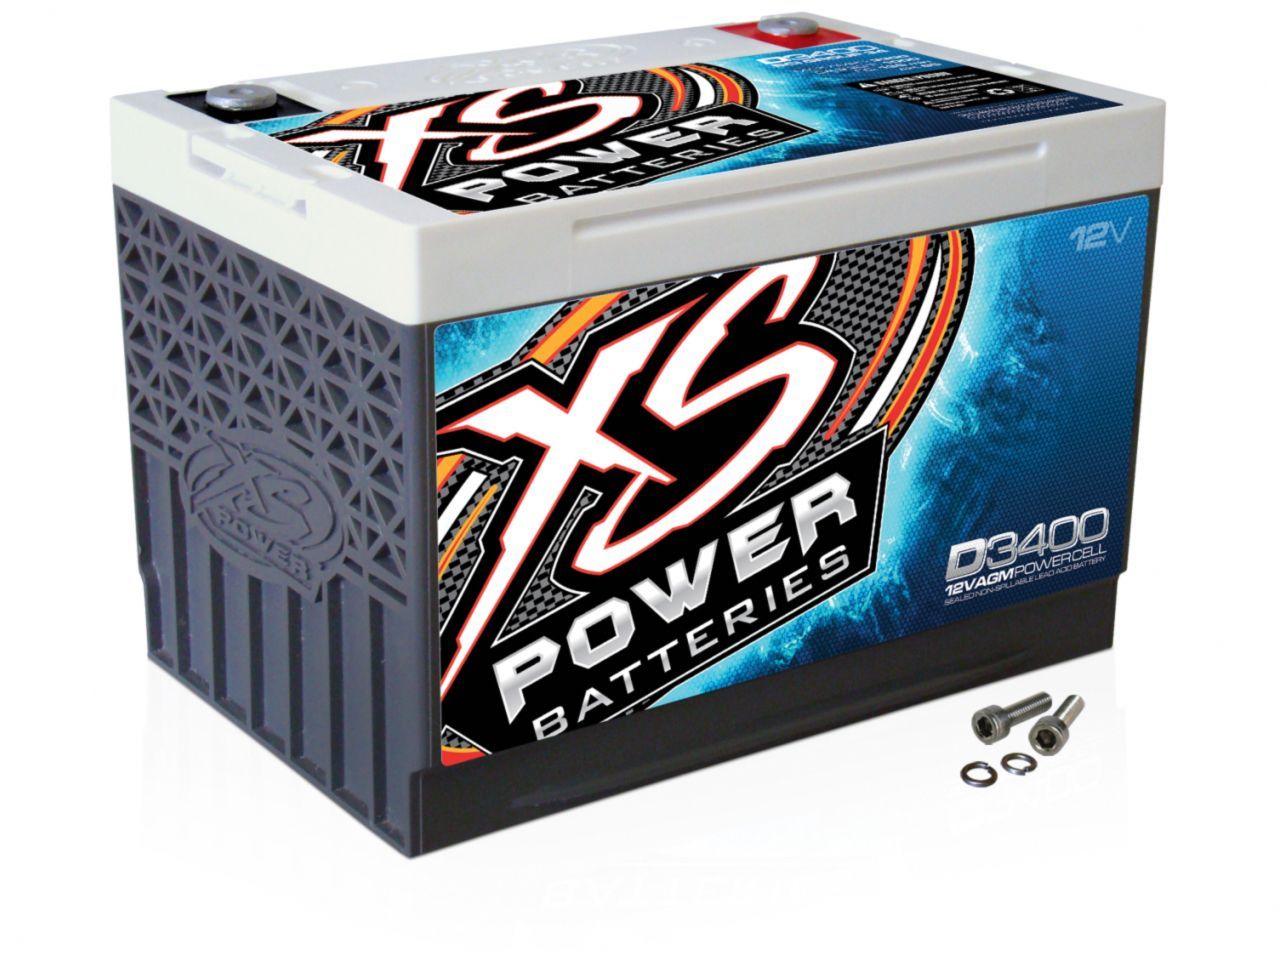 XS Power Batteries D3400 Item Image